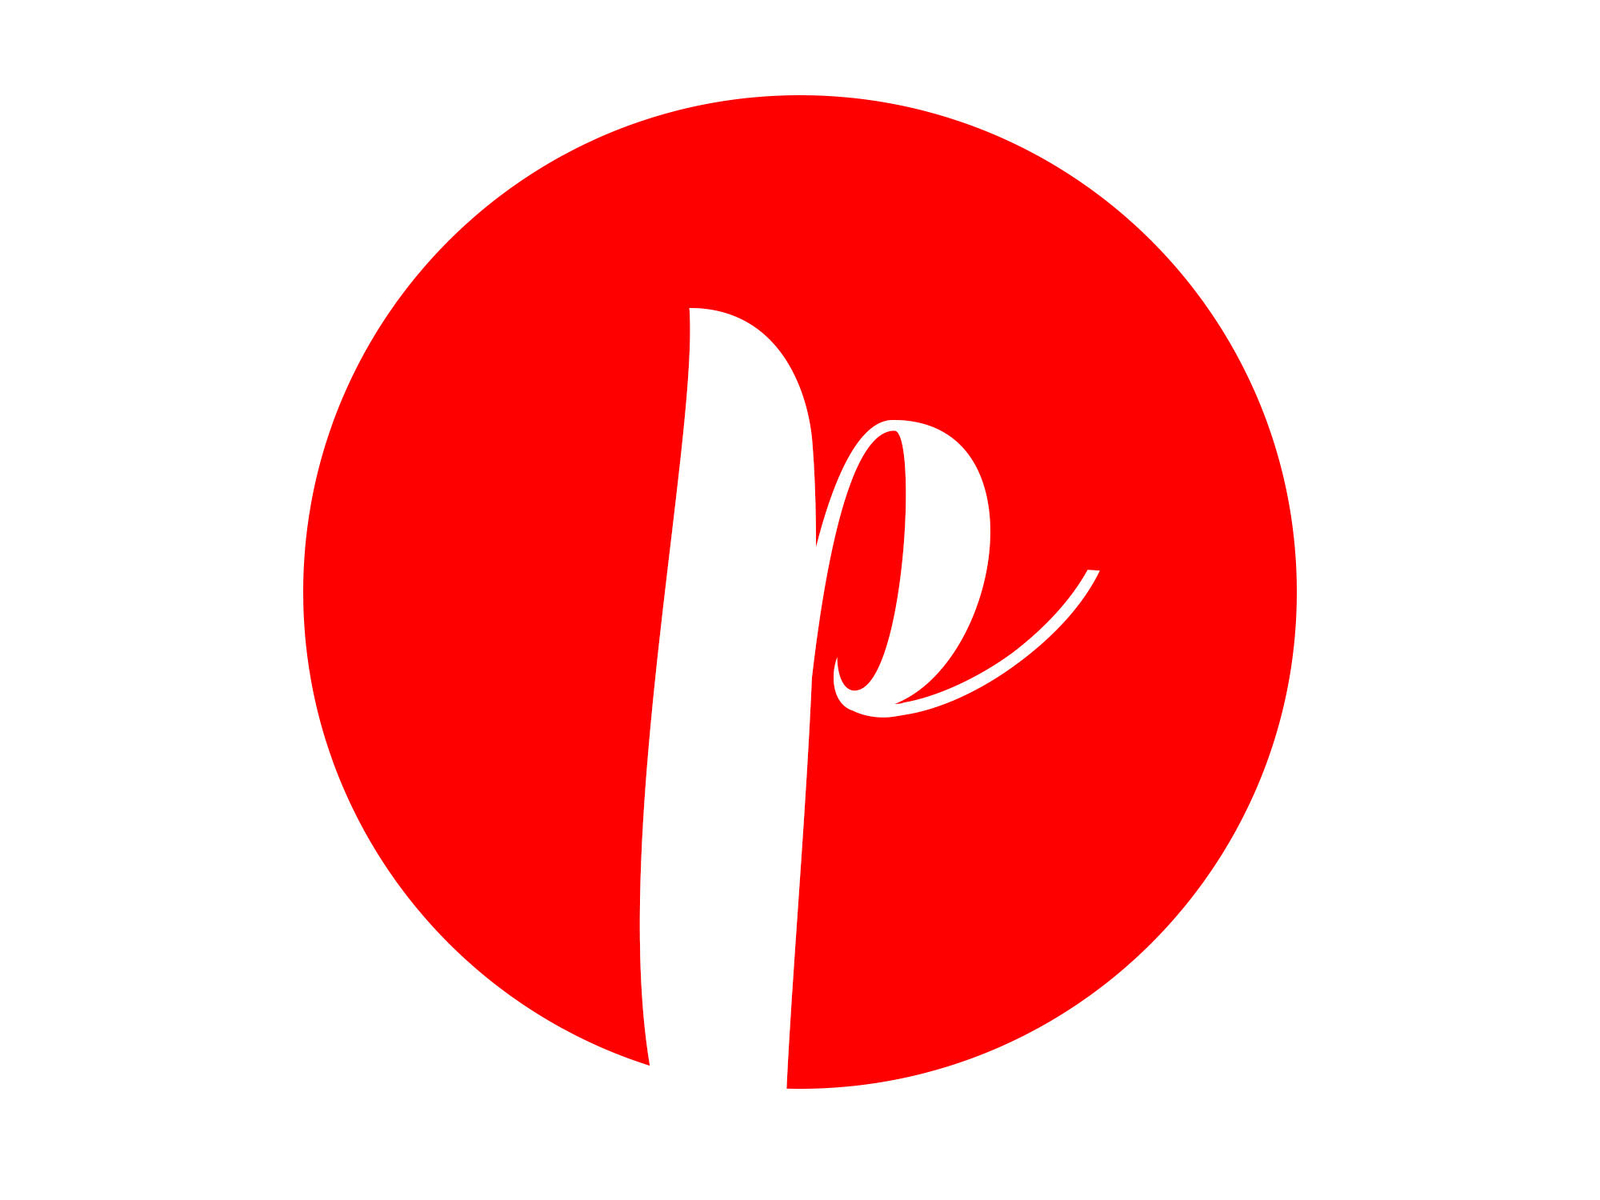 Paprika - logo design by Ronalds Vilciņš on Dribbble